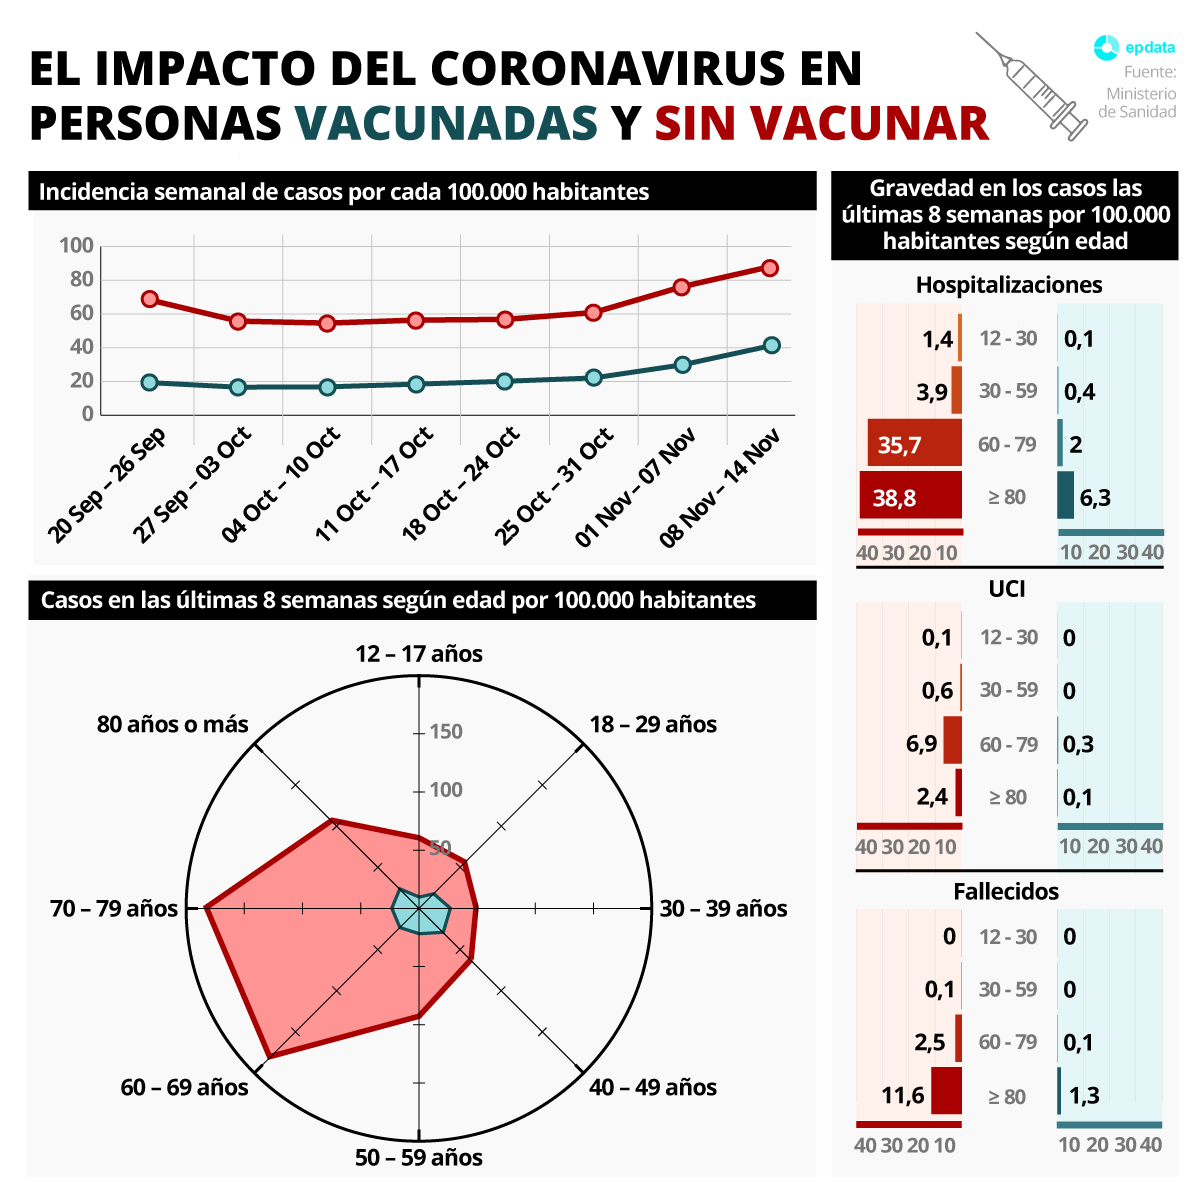 Infografía con el impacto del coronavirus en personas vacunadas y sin vacunar en España